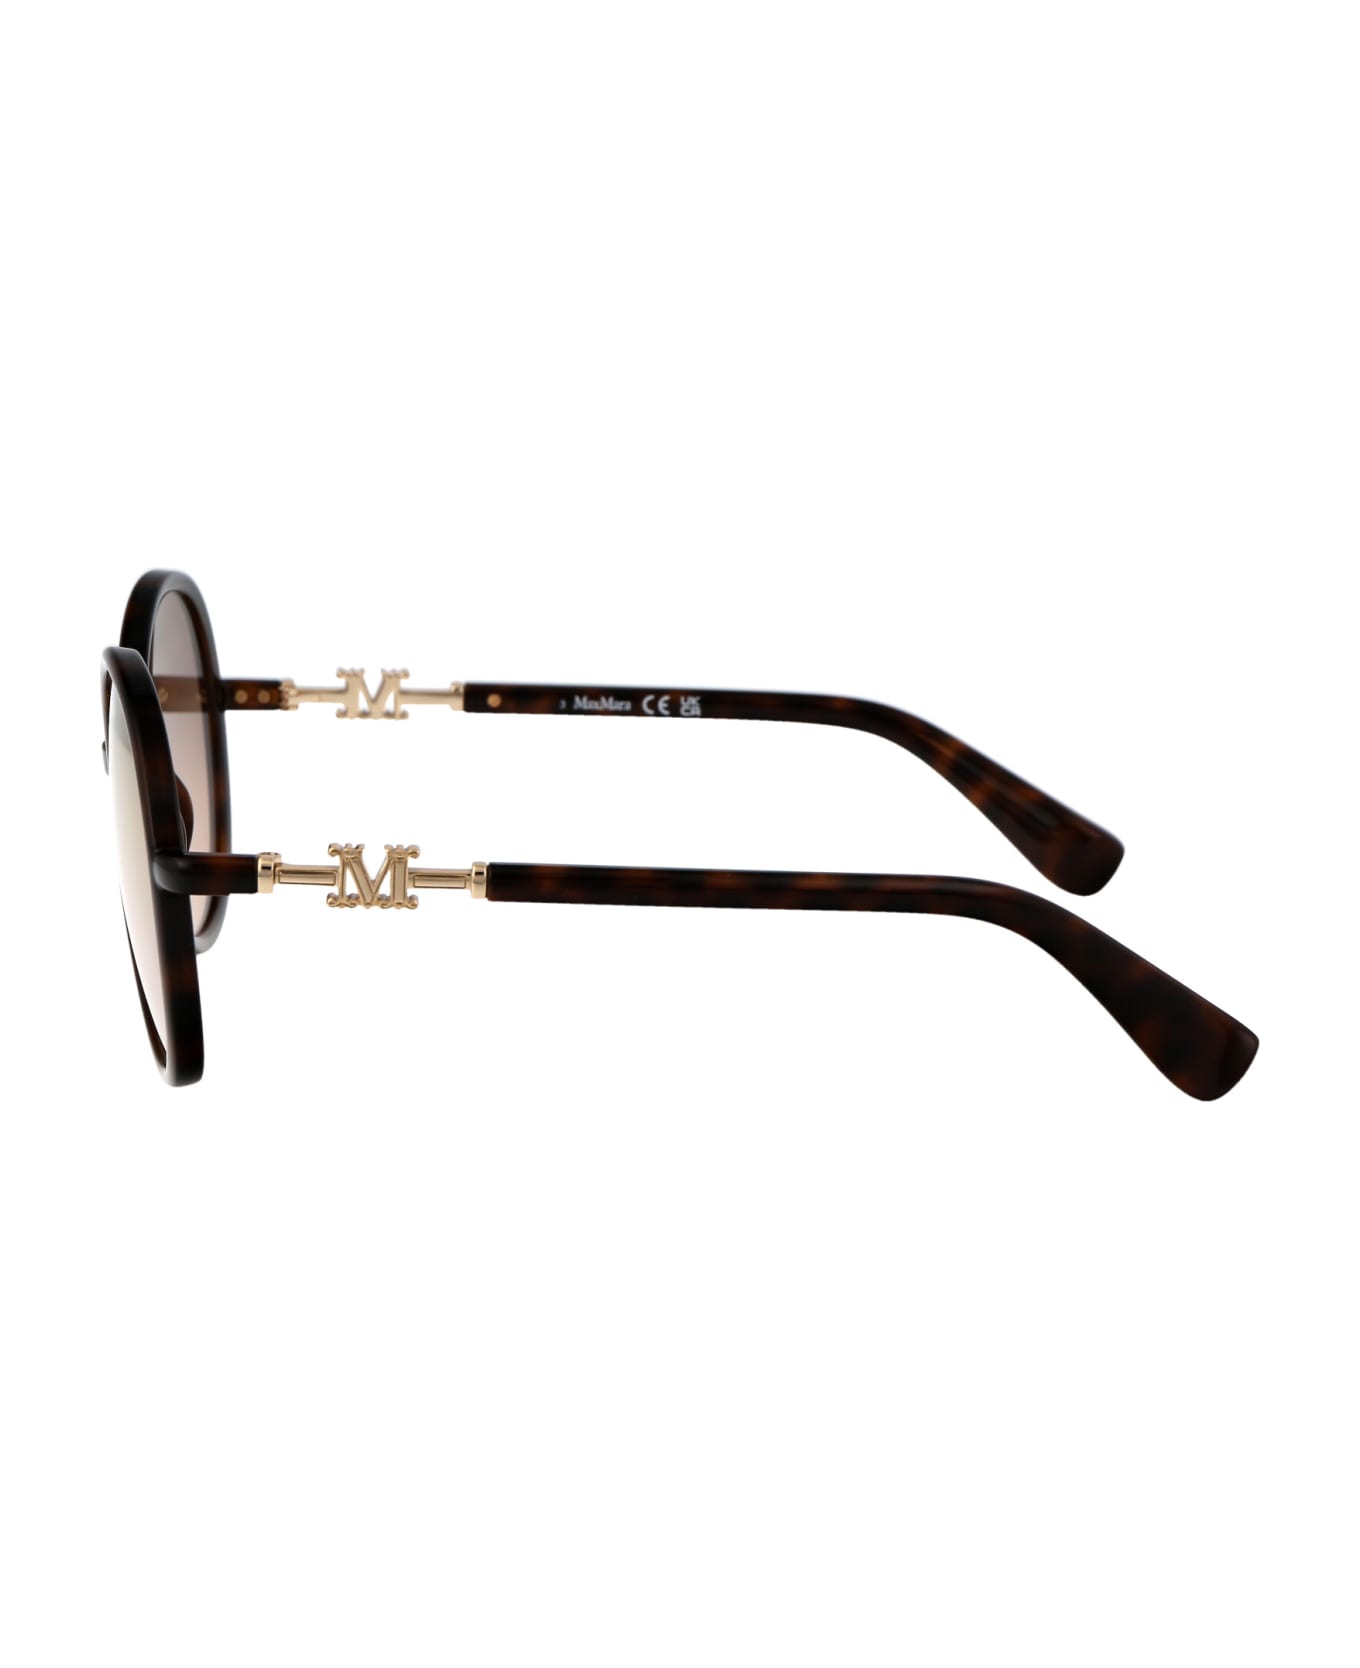 Max Mara Emme15 Sunglasses - 52G Avana Scura/Marrone Specchiato